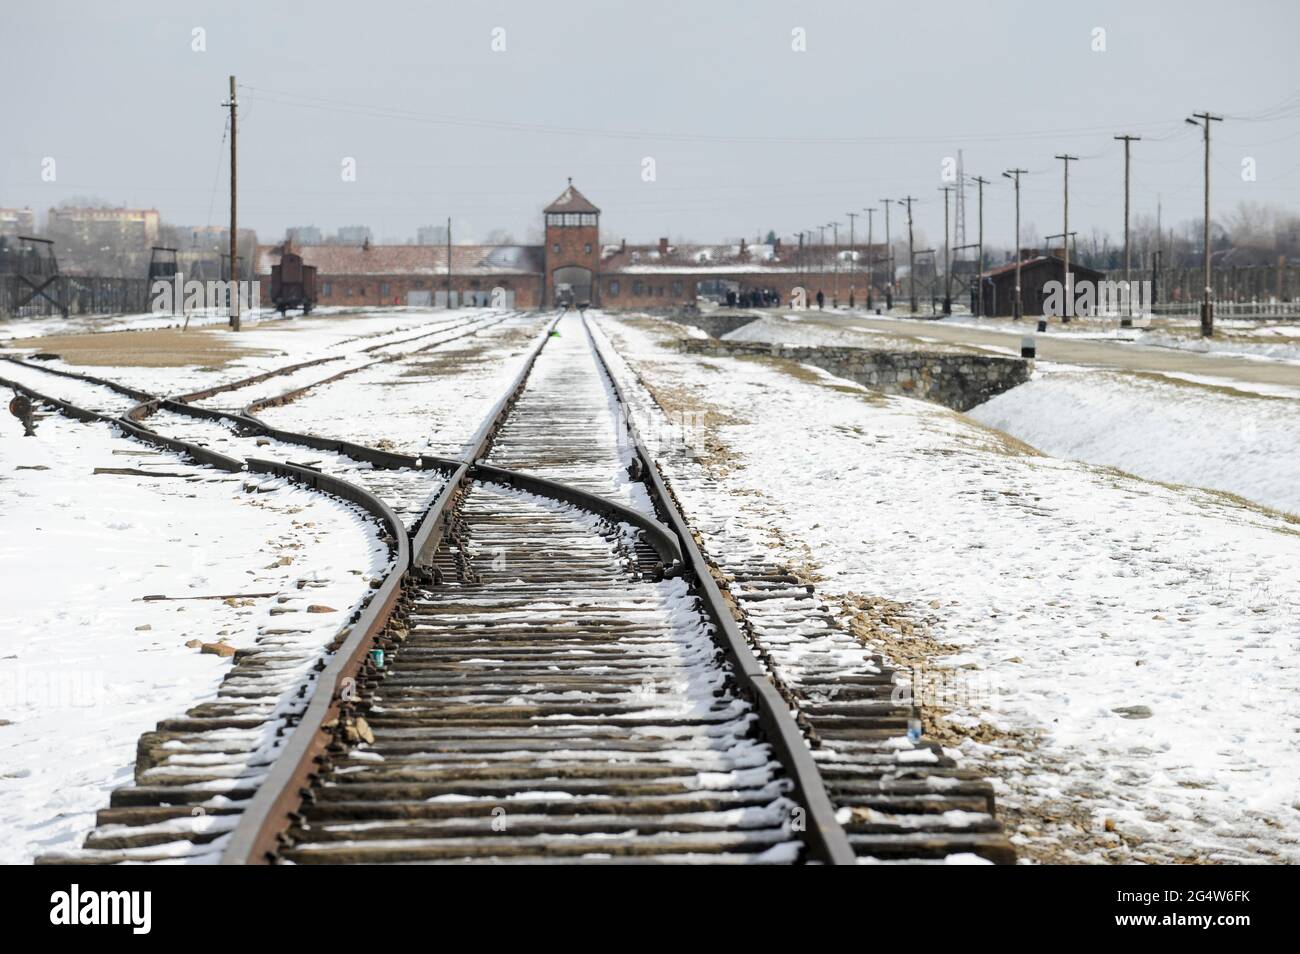 POLONIA , Oswiecim, Auschwitz-Birkenau, campo di concentramento del regime nazista tedesco, dove 1 milione di ebrei sono stati uccisi dalle SS (1940-1945) , ferrovia per il trasporto di ebrei da tutta europa alle camere a gas Foto Stock